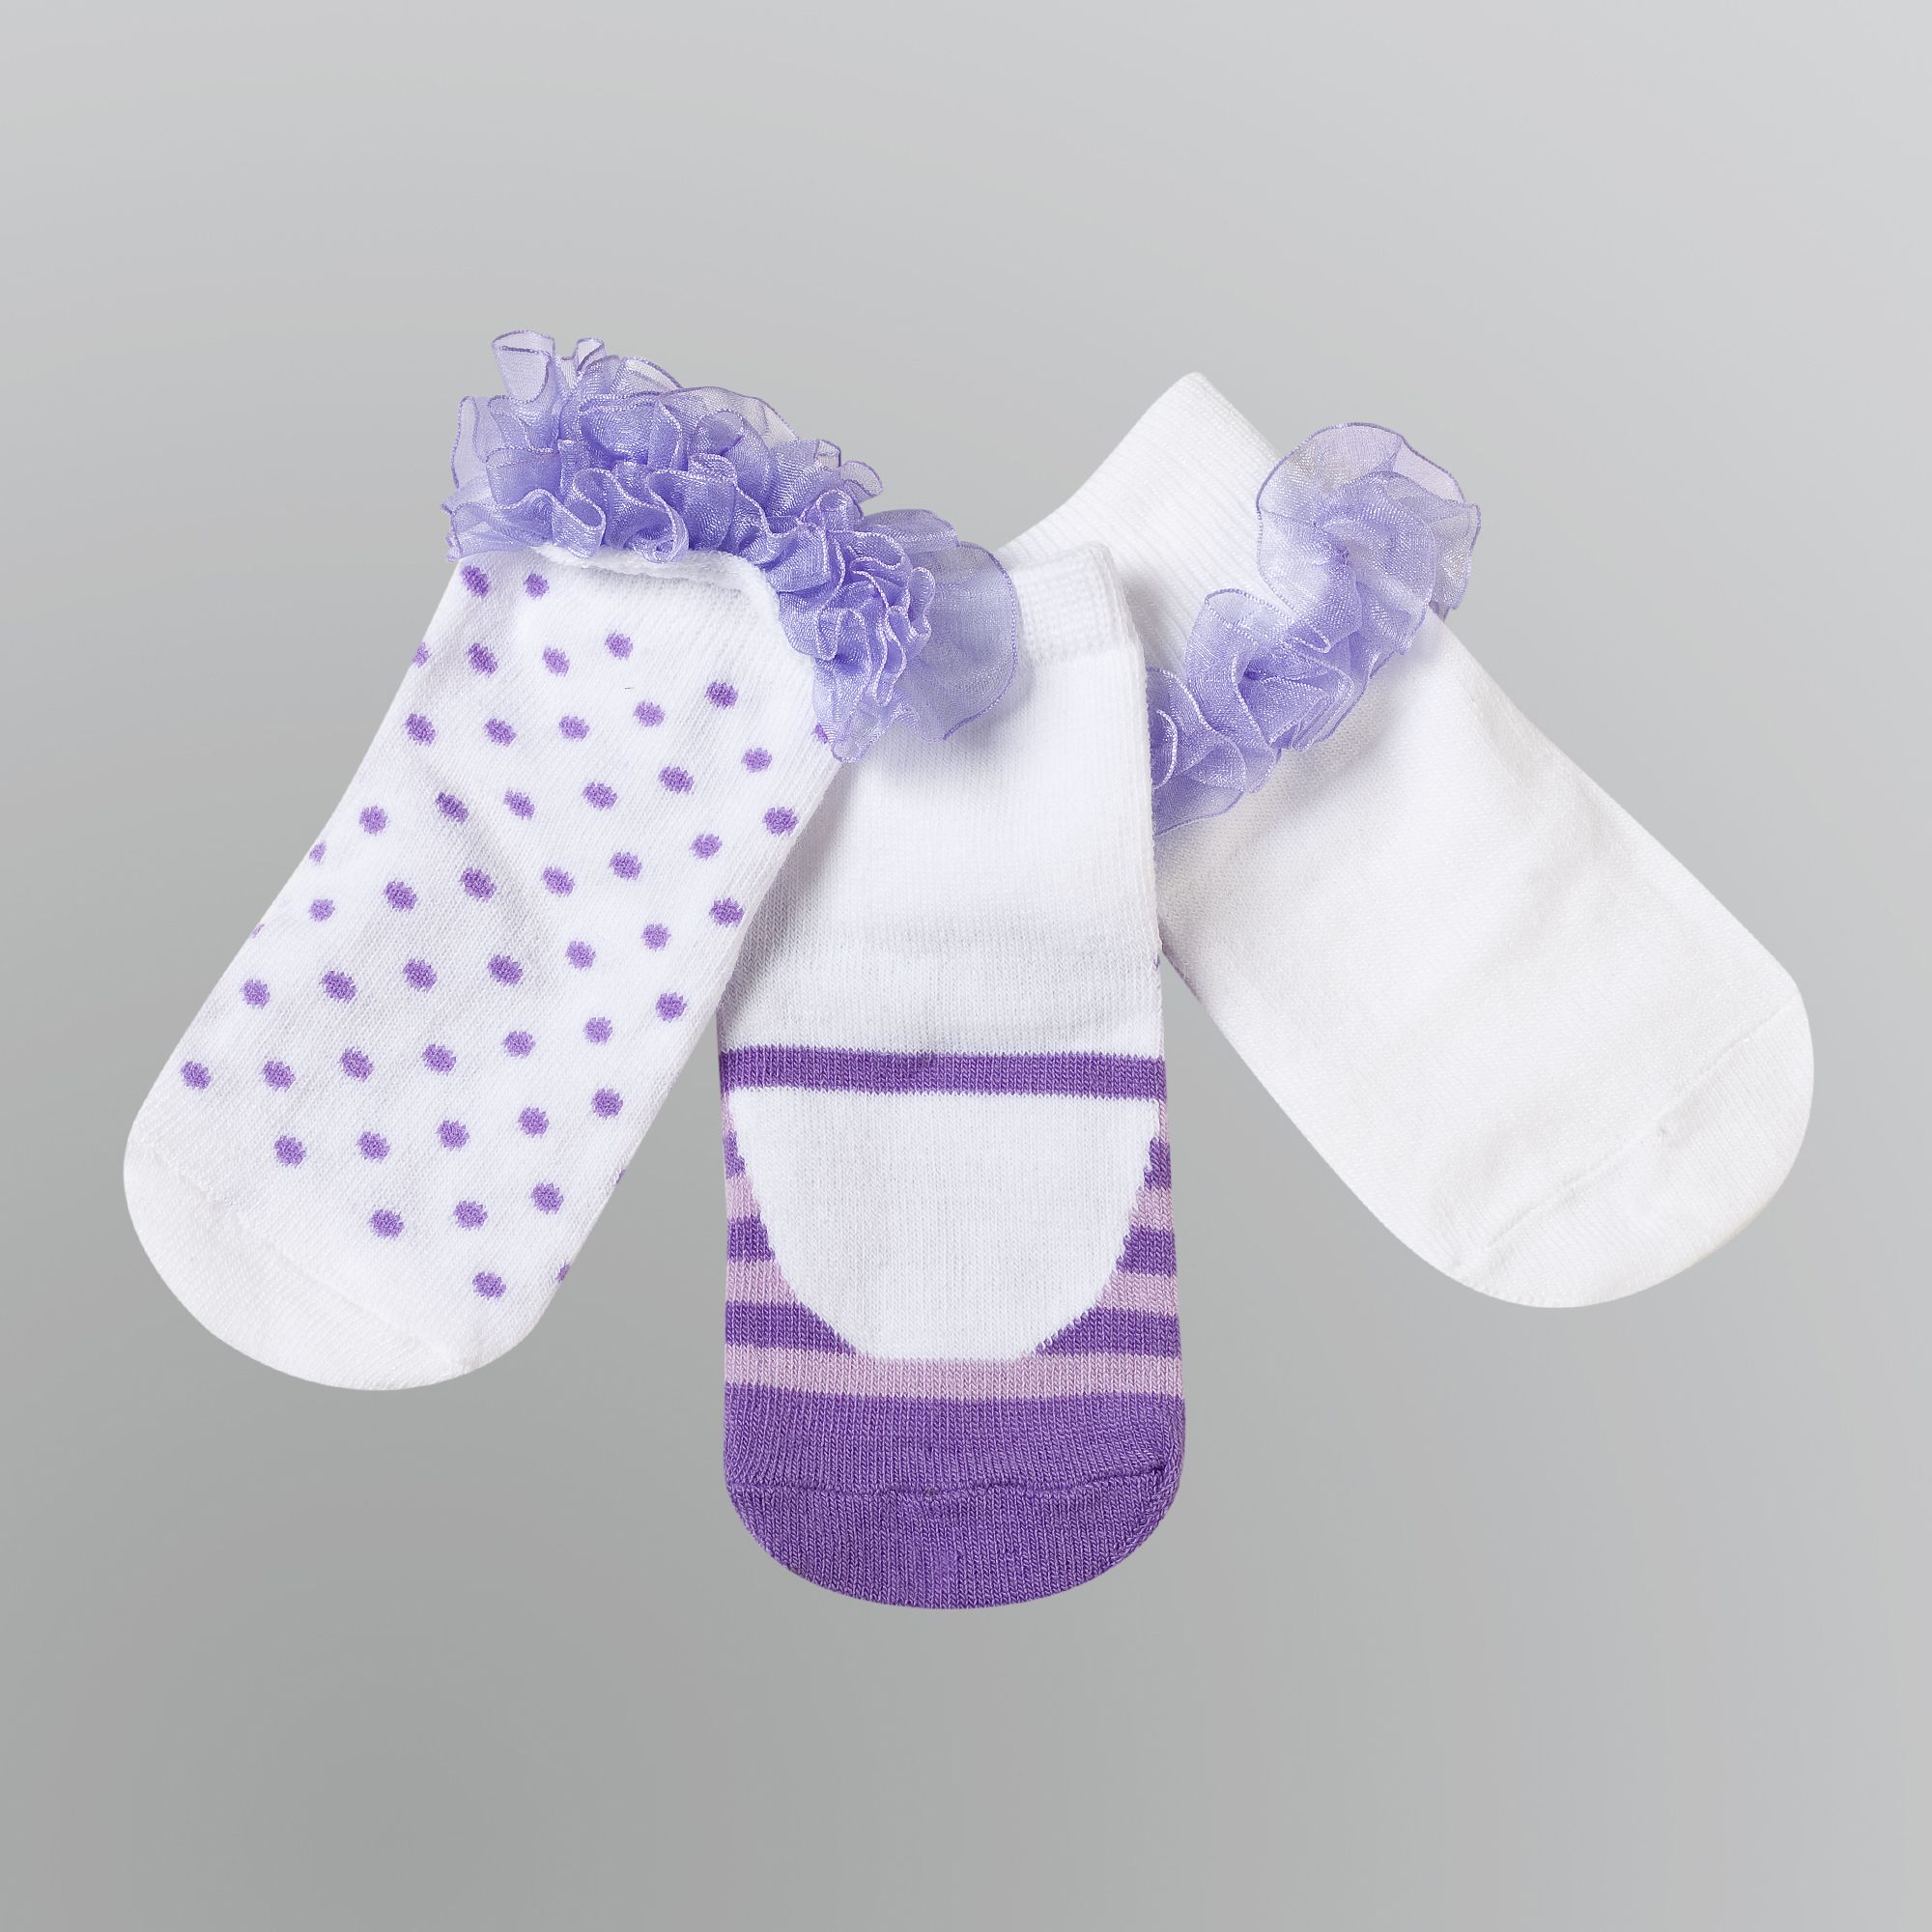 WonderKids Girl&#8217;s Infant & Toddler Socks 3pk Frill Dotted Purple